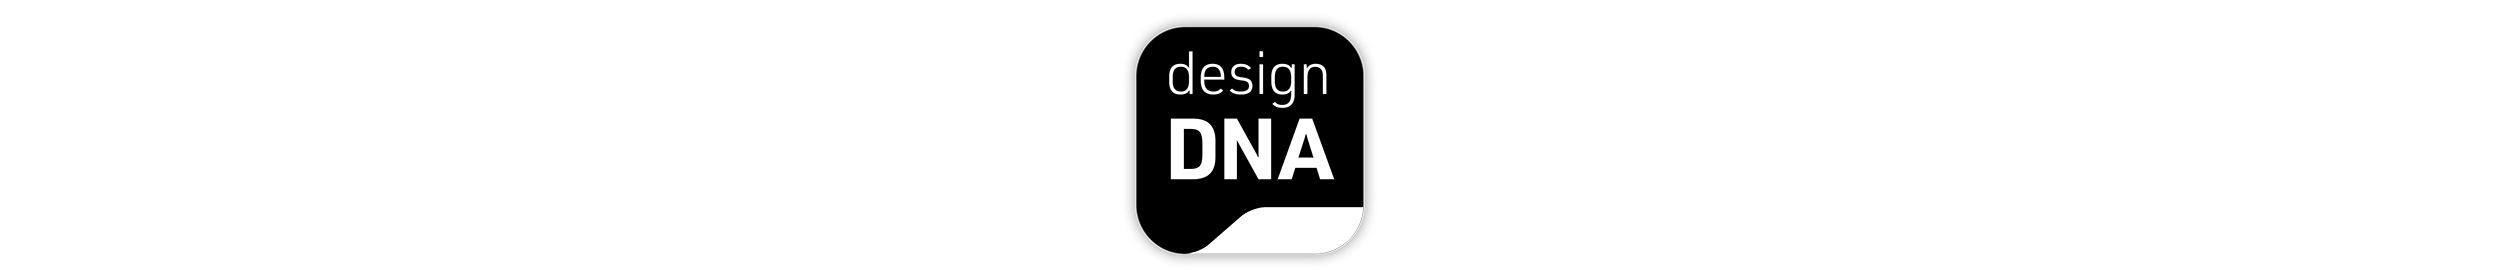 Design DNA Icon in schwarz auf weißer Fläche